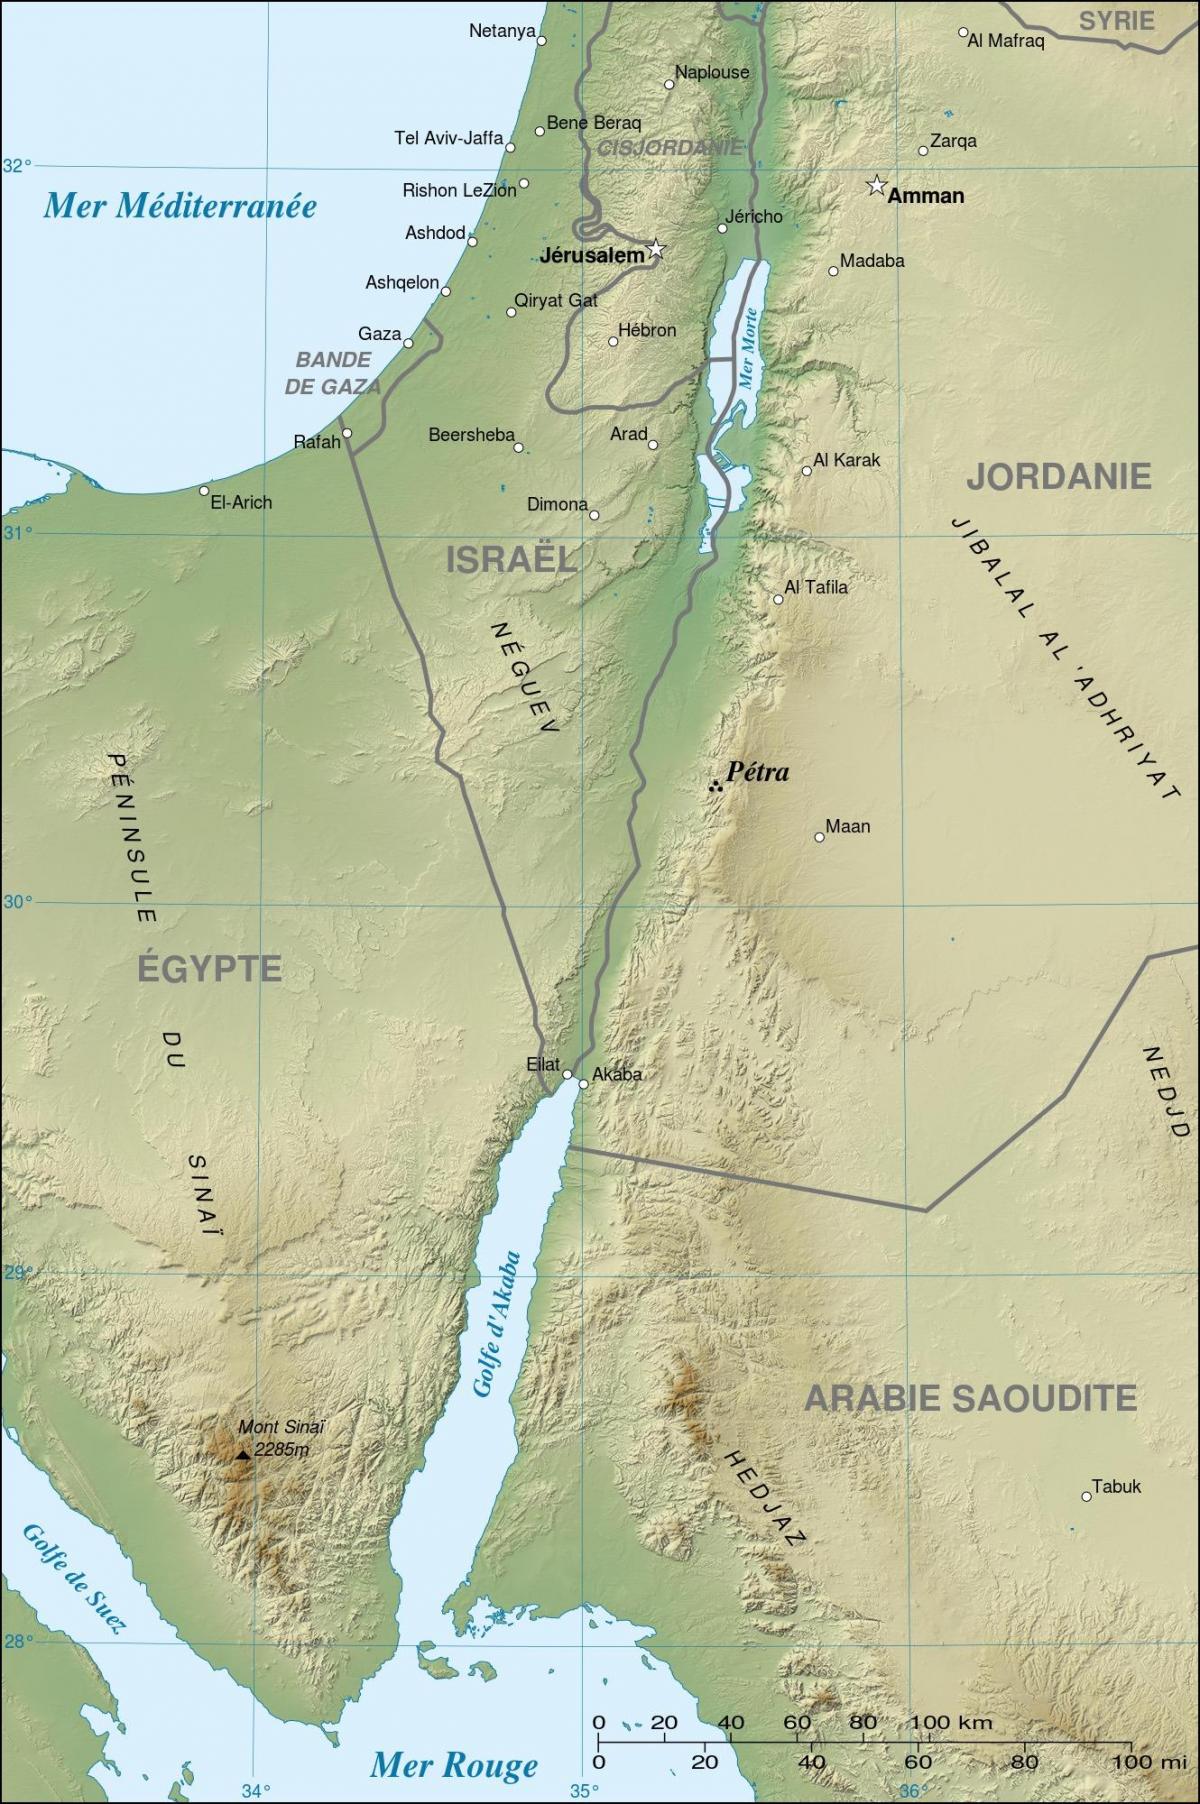 χάρτης της Ιορδανίας δείχνει πέτρα